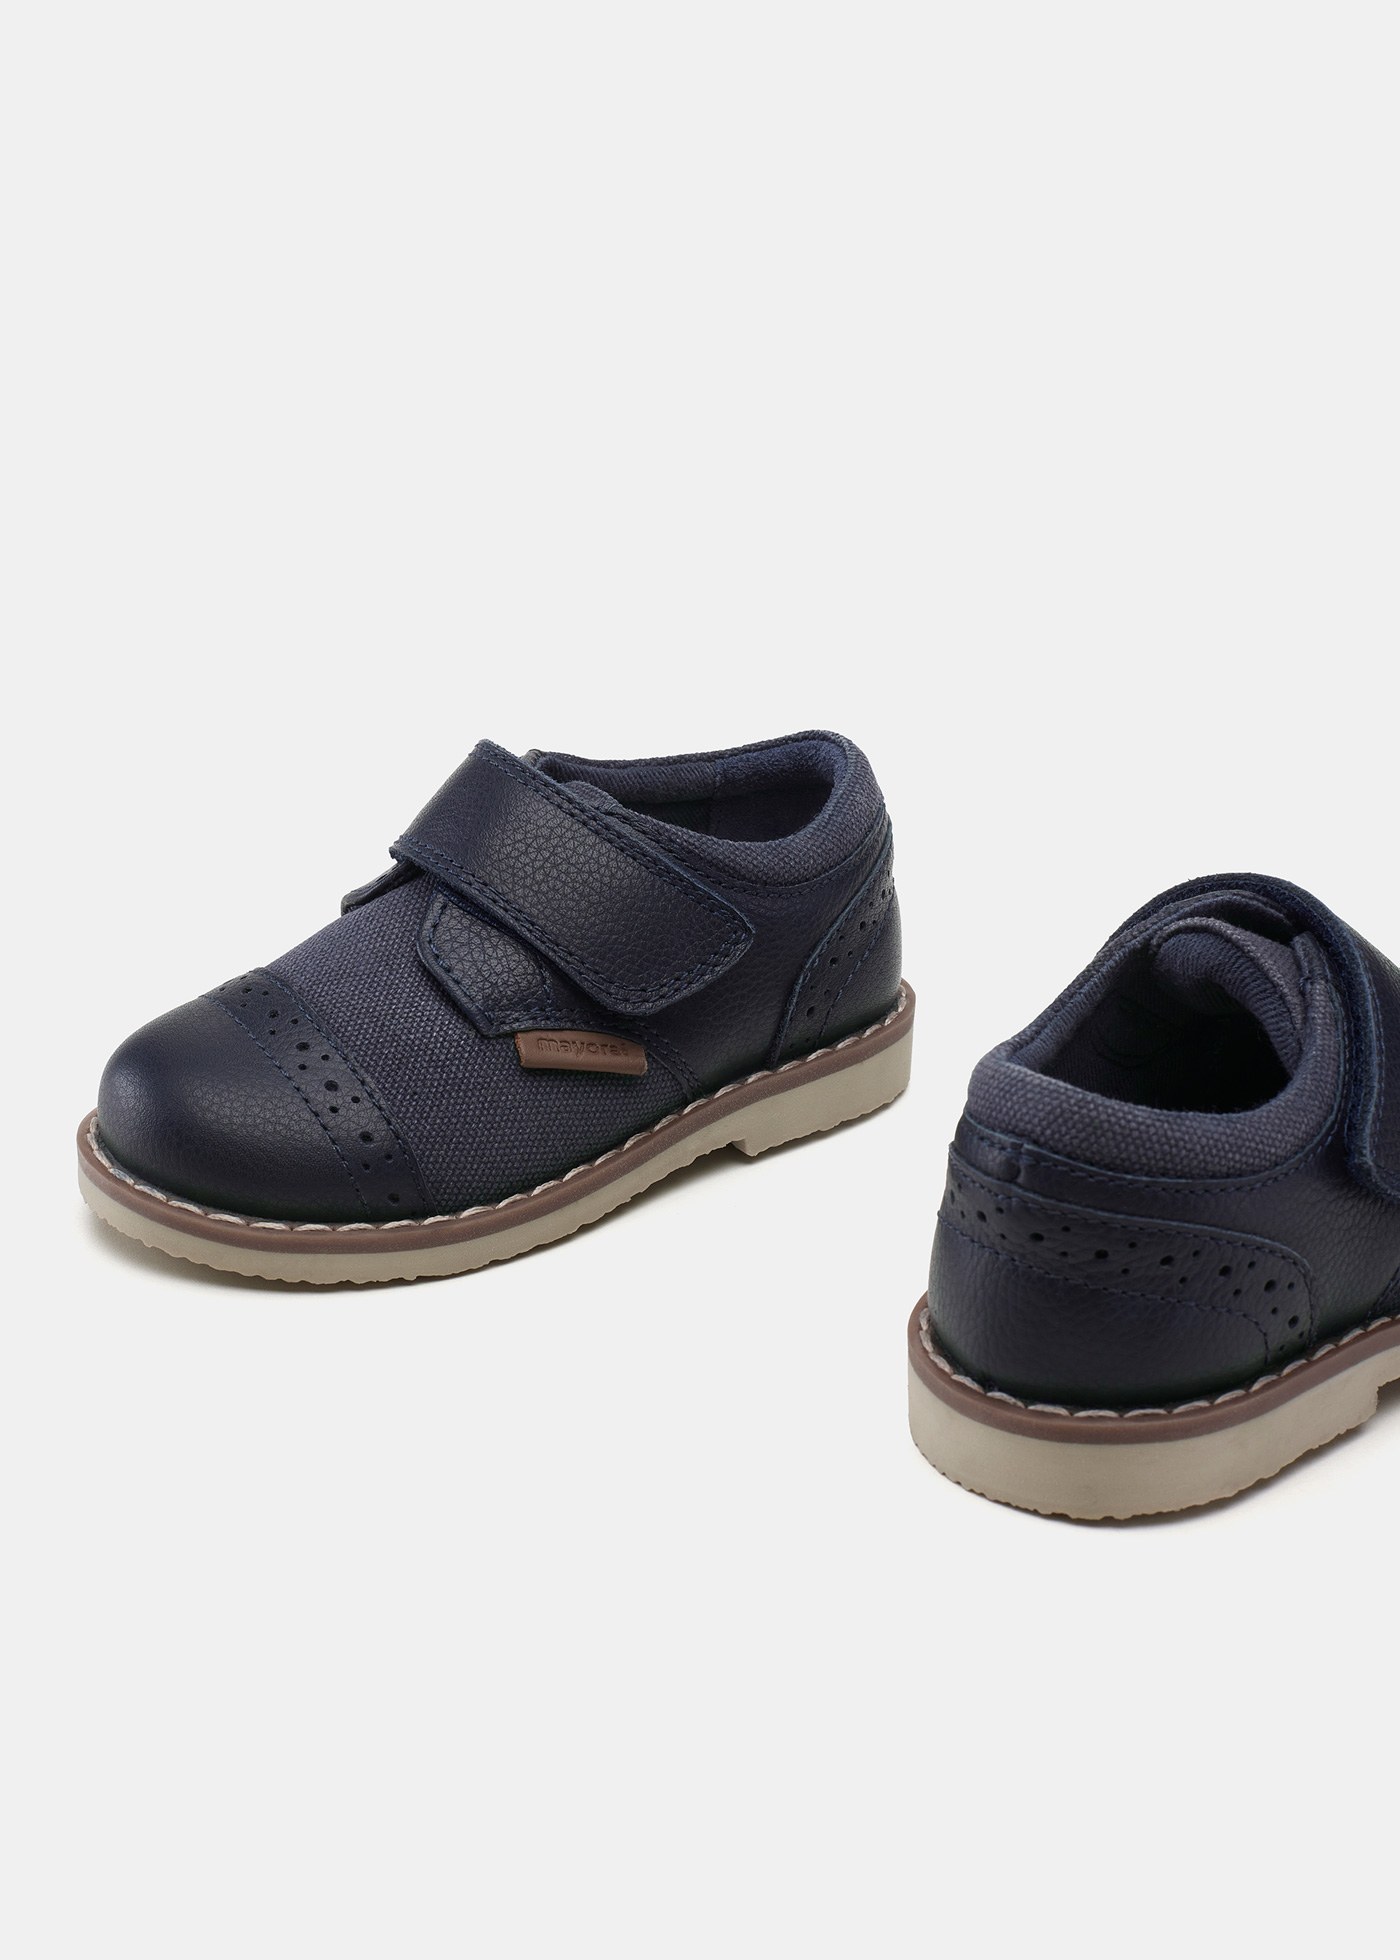 Buty skórzane oxford dla niemowlęcia